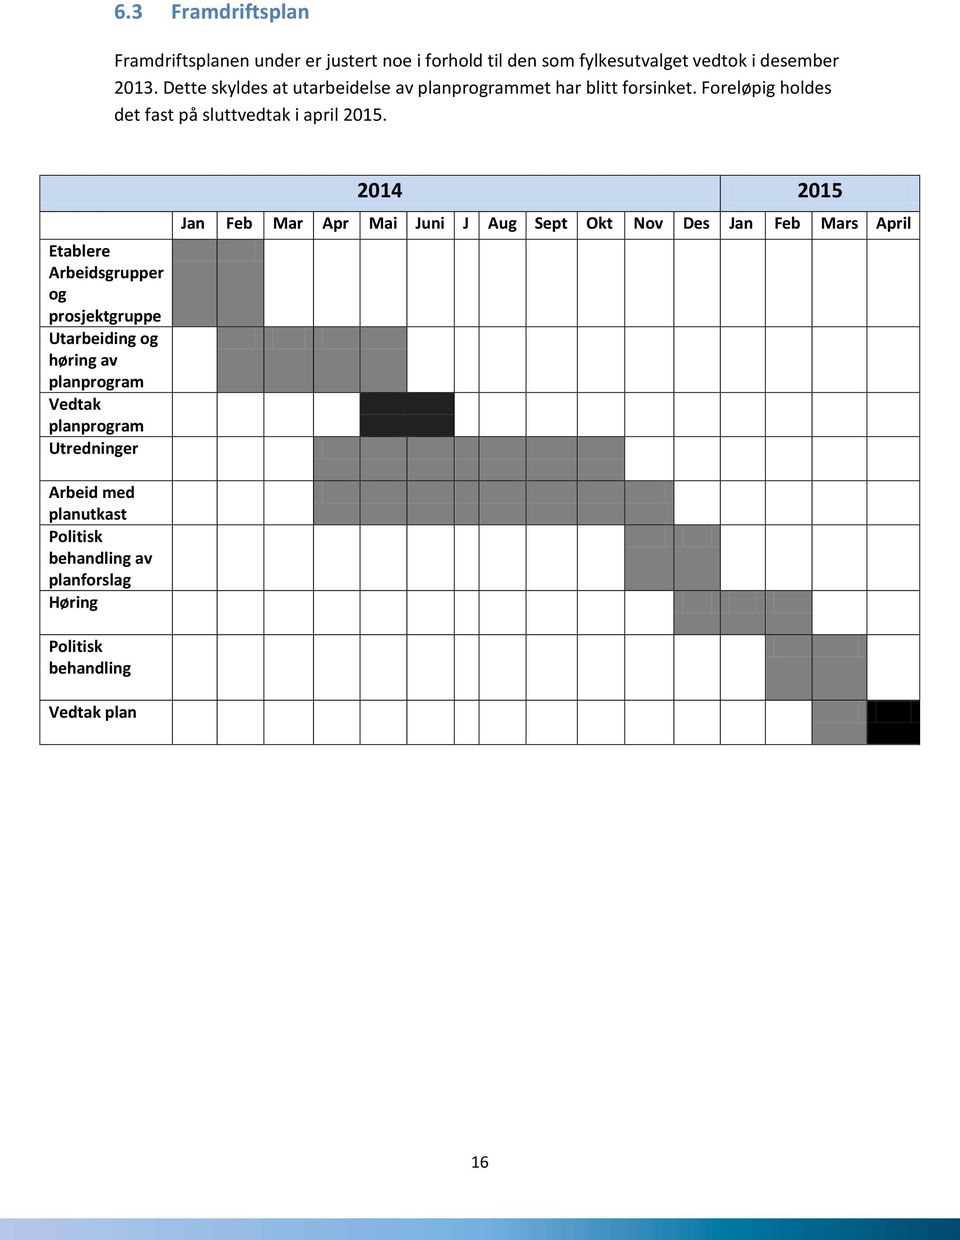 Etablere Arbeidsgrupper og prosjektgruppe Utarbeiding og høring av planprogram Vedtak planprogram Utredninger 2014 2015 Jan Feb Mar